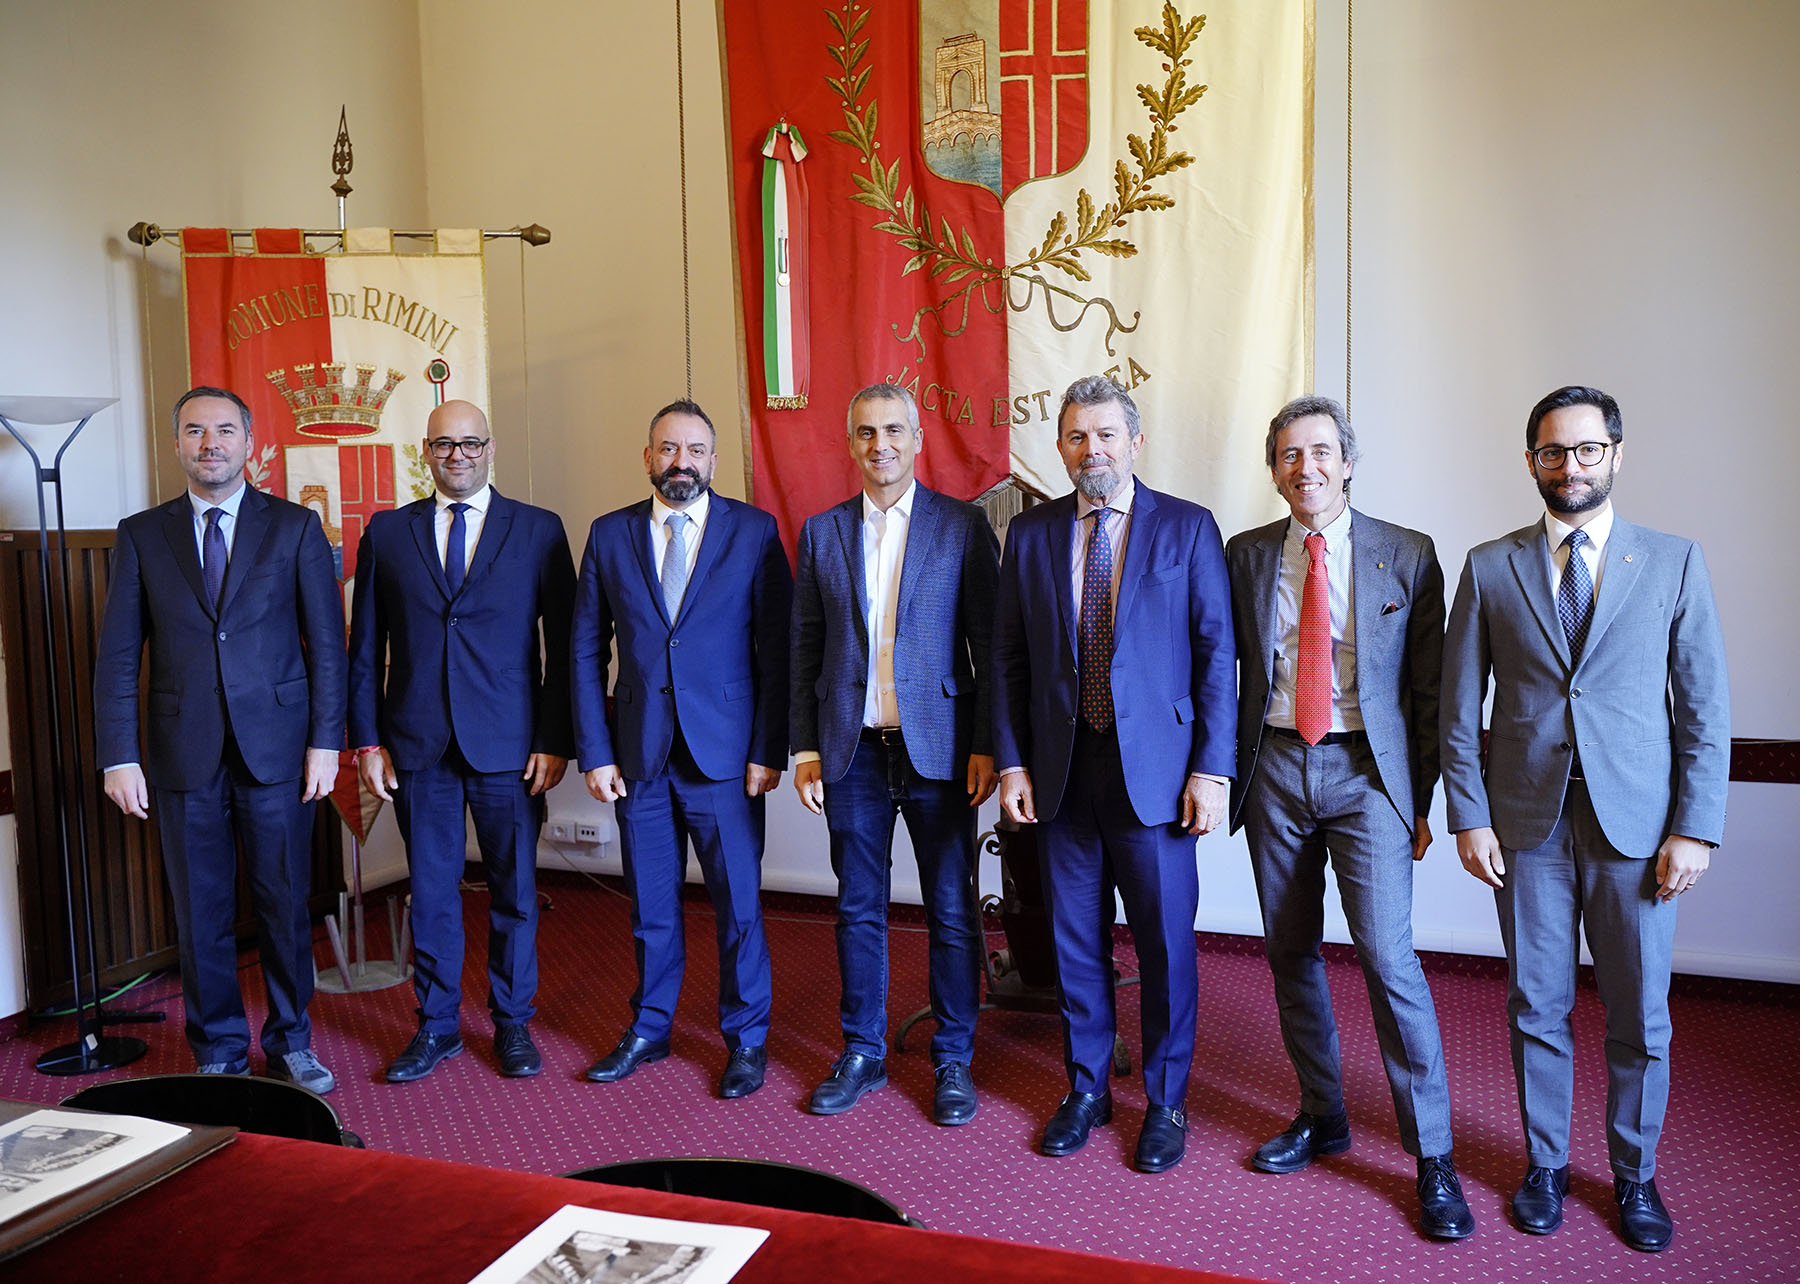 Comitato promotore istituzionale: raggiunta una intesa tra San Marino e Rimini